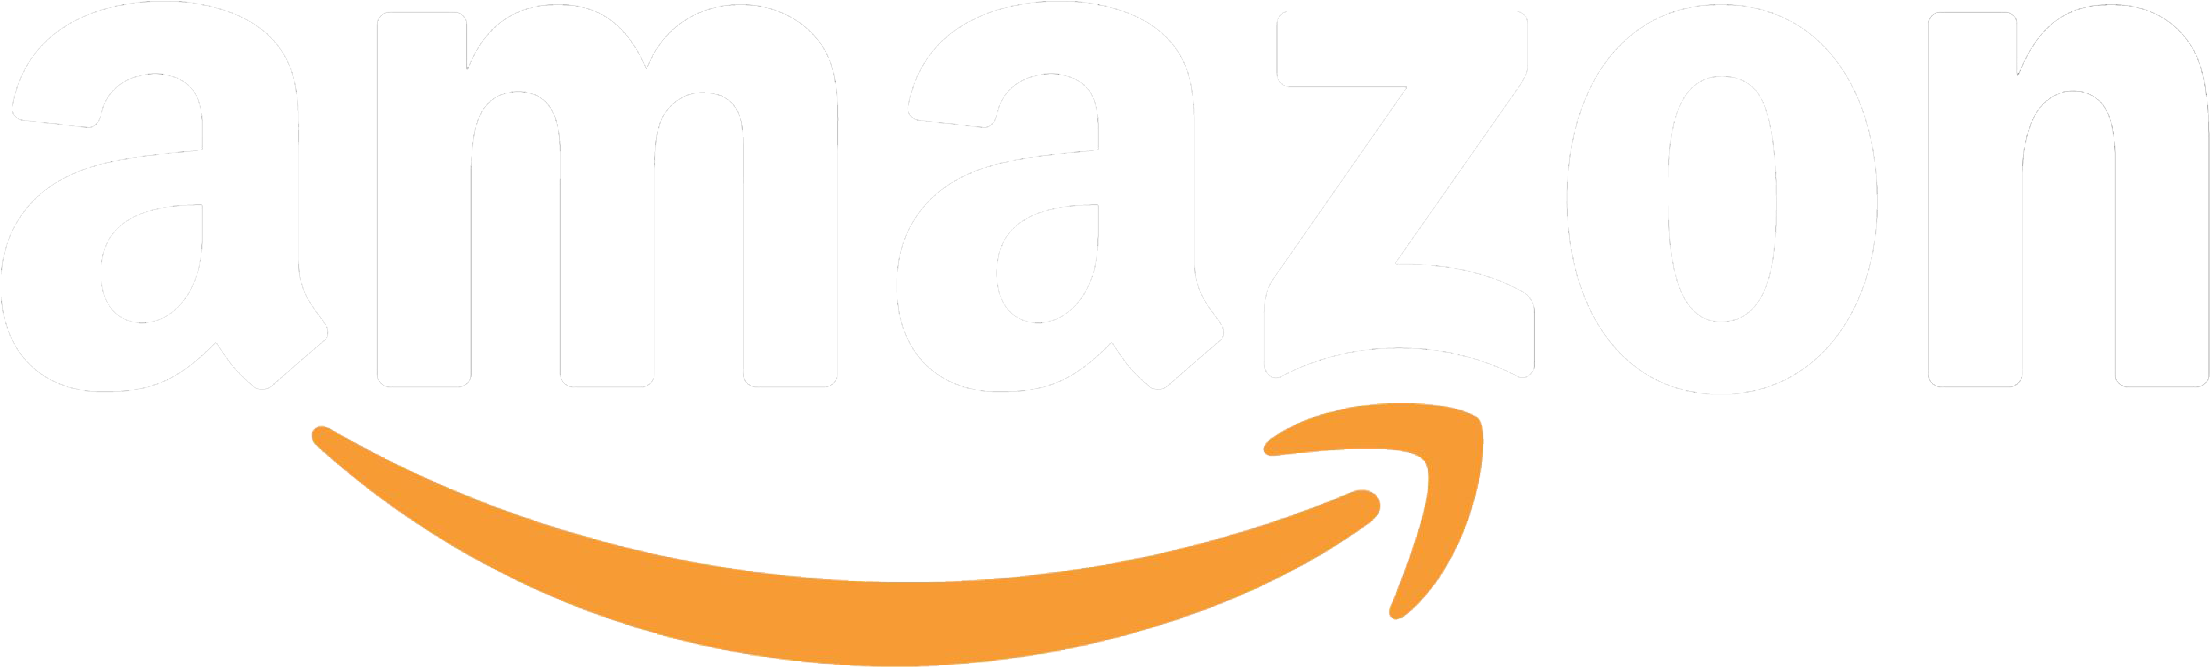 Amazon - De - Marketplace - Amazon Logo On Black Clipart (2301x850), Png Download